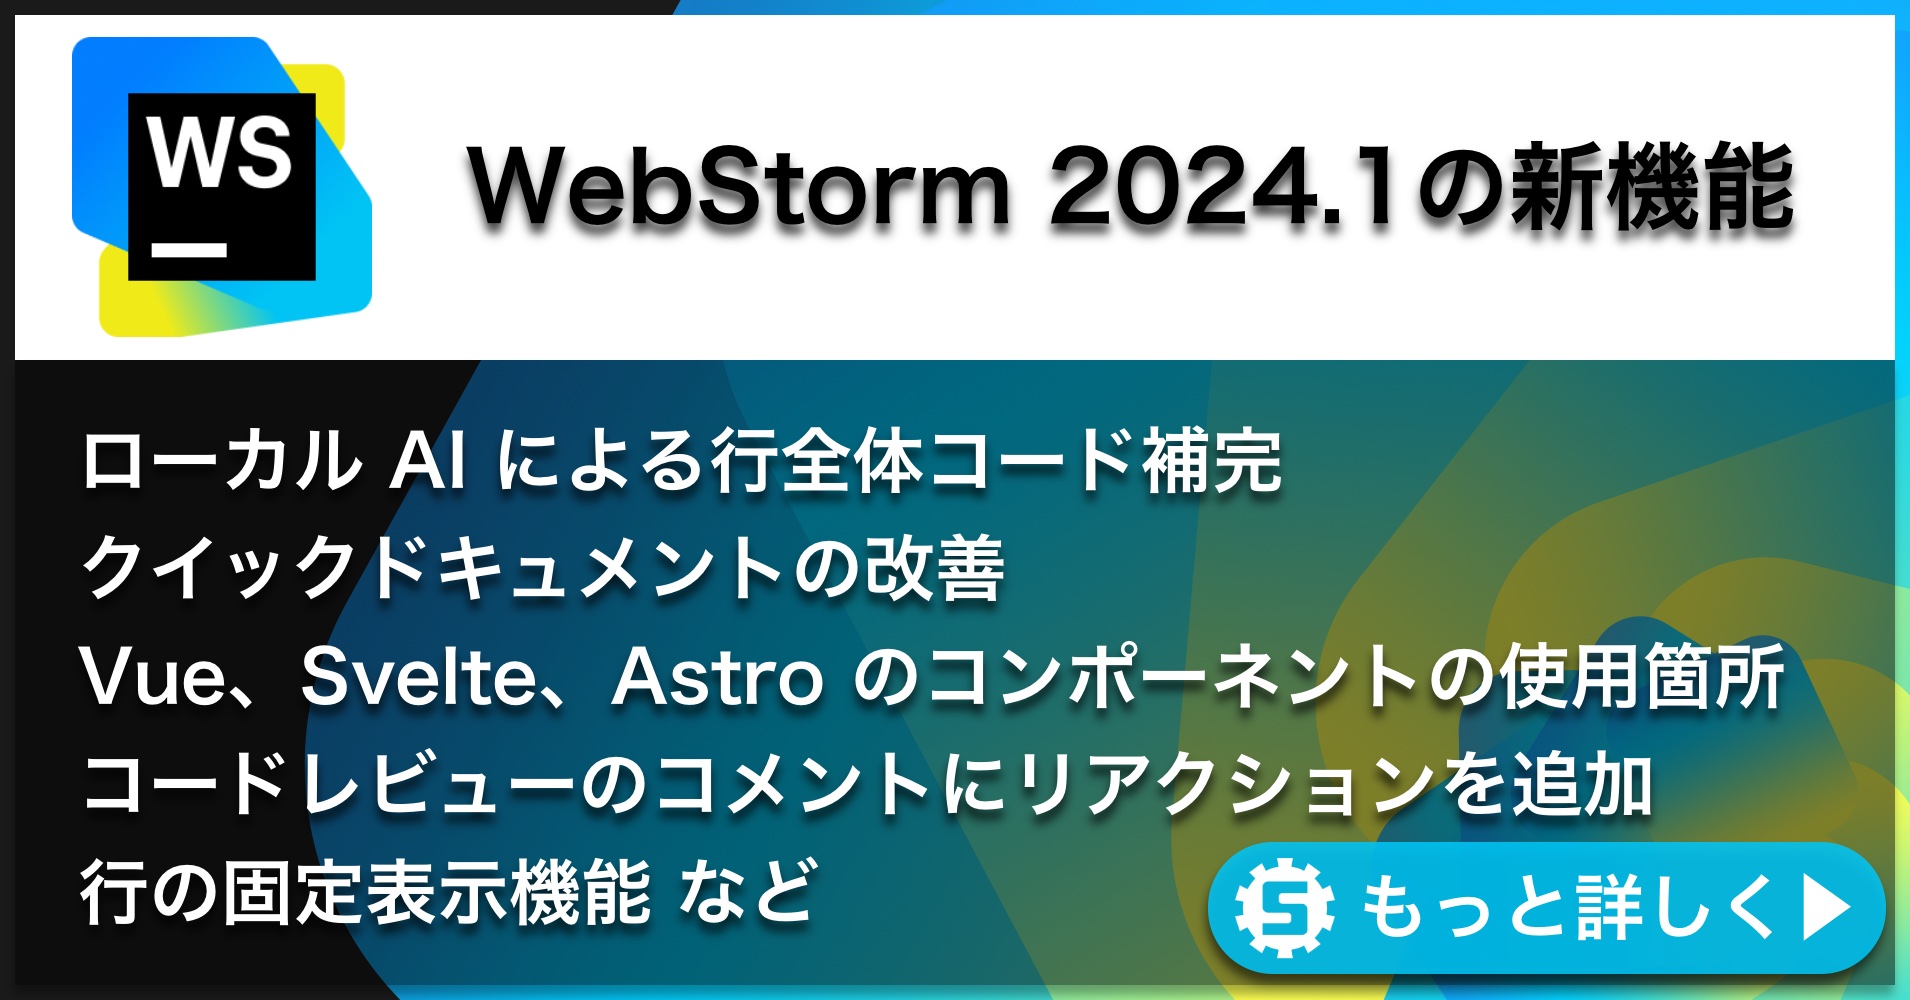 WebStorm 2024.1の新機能